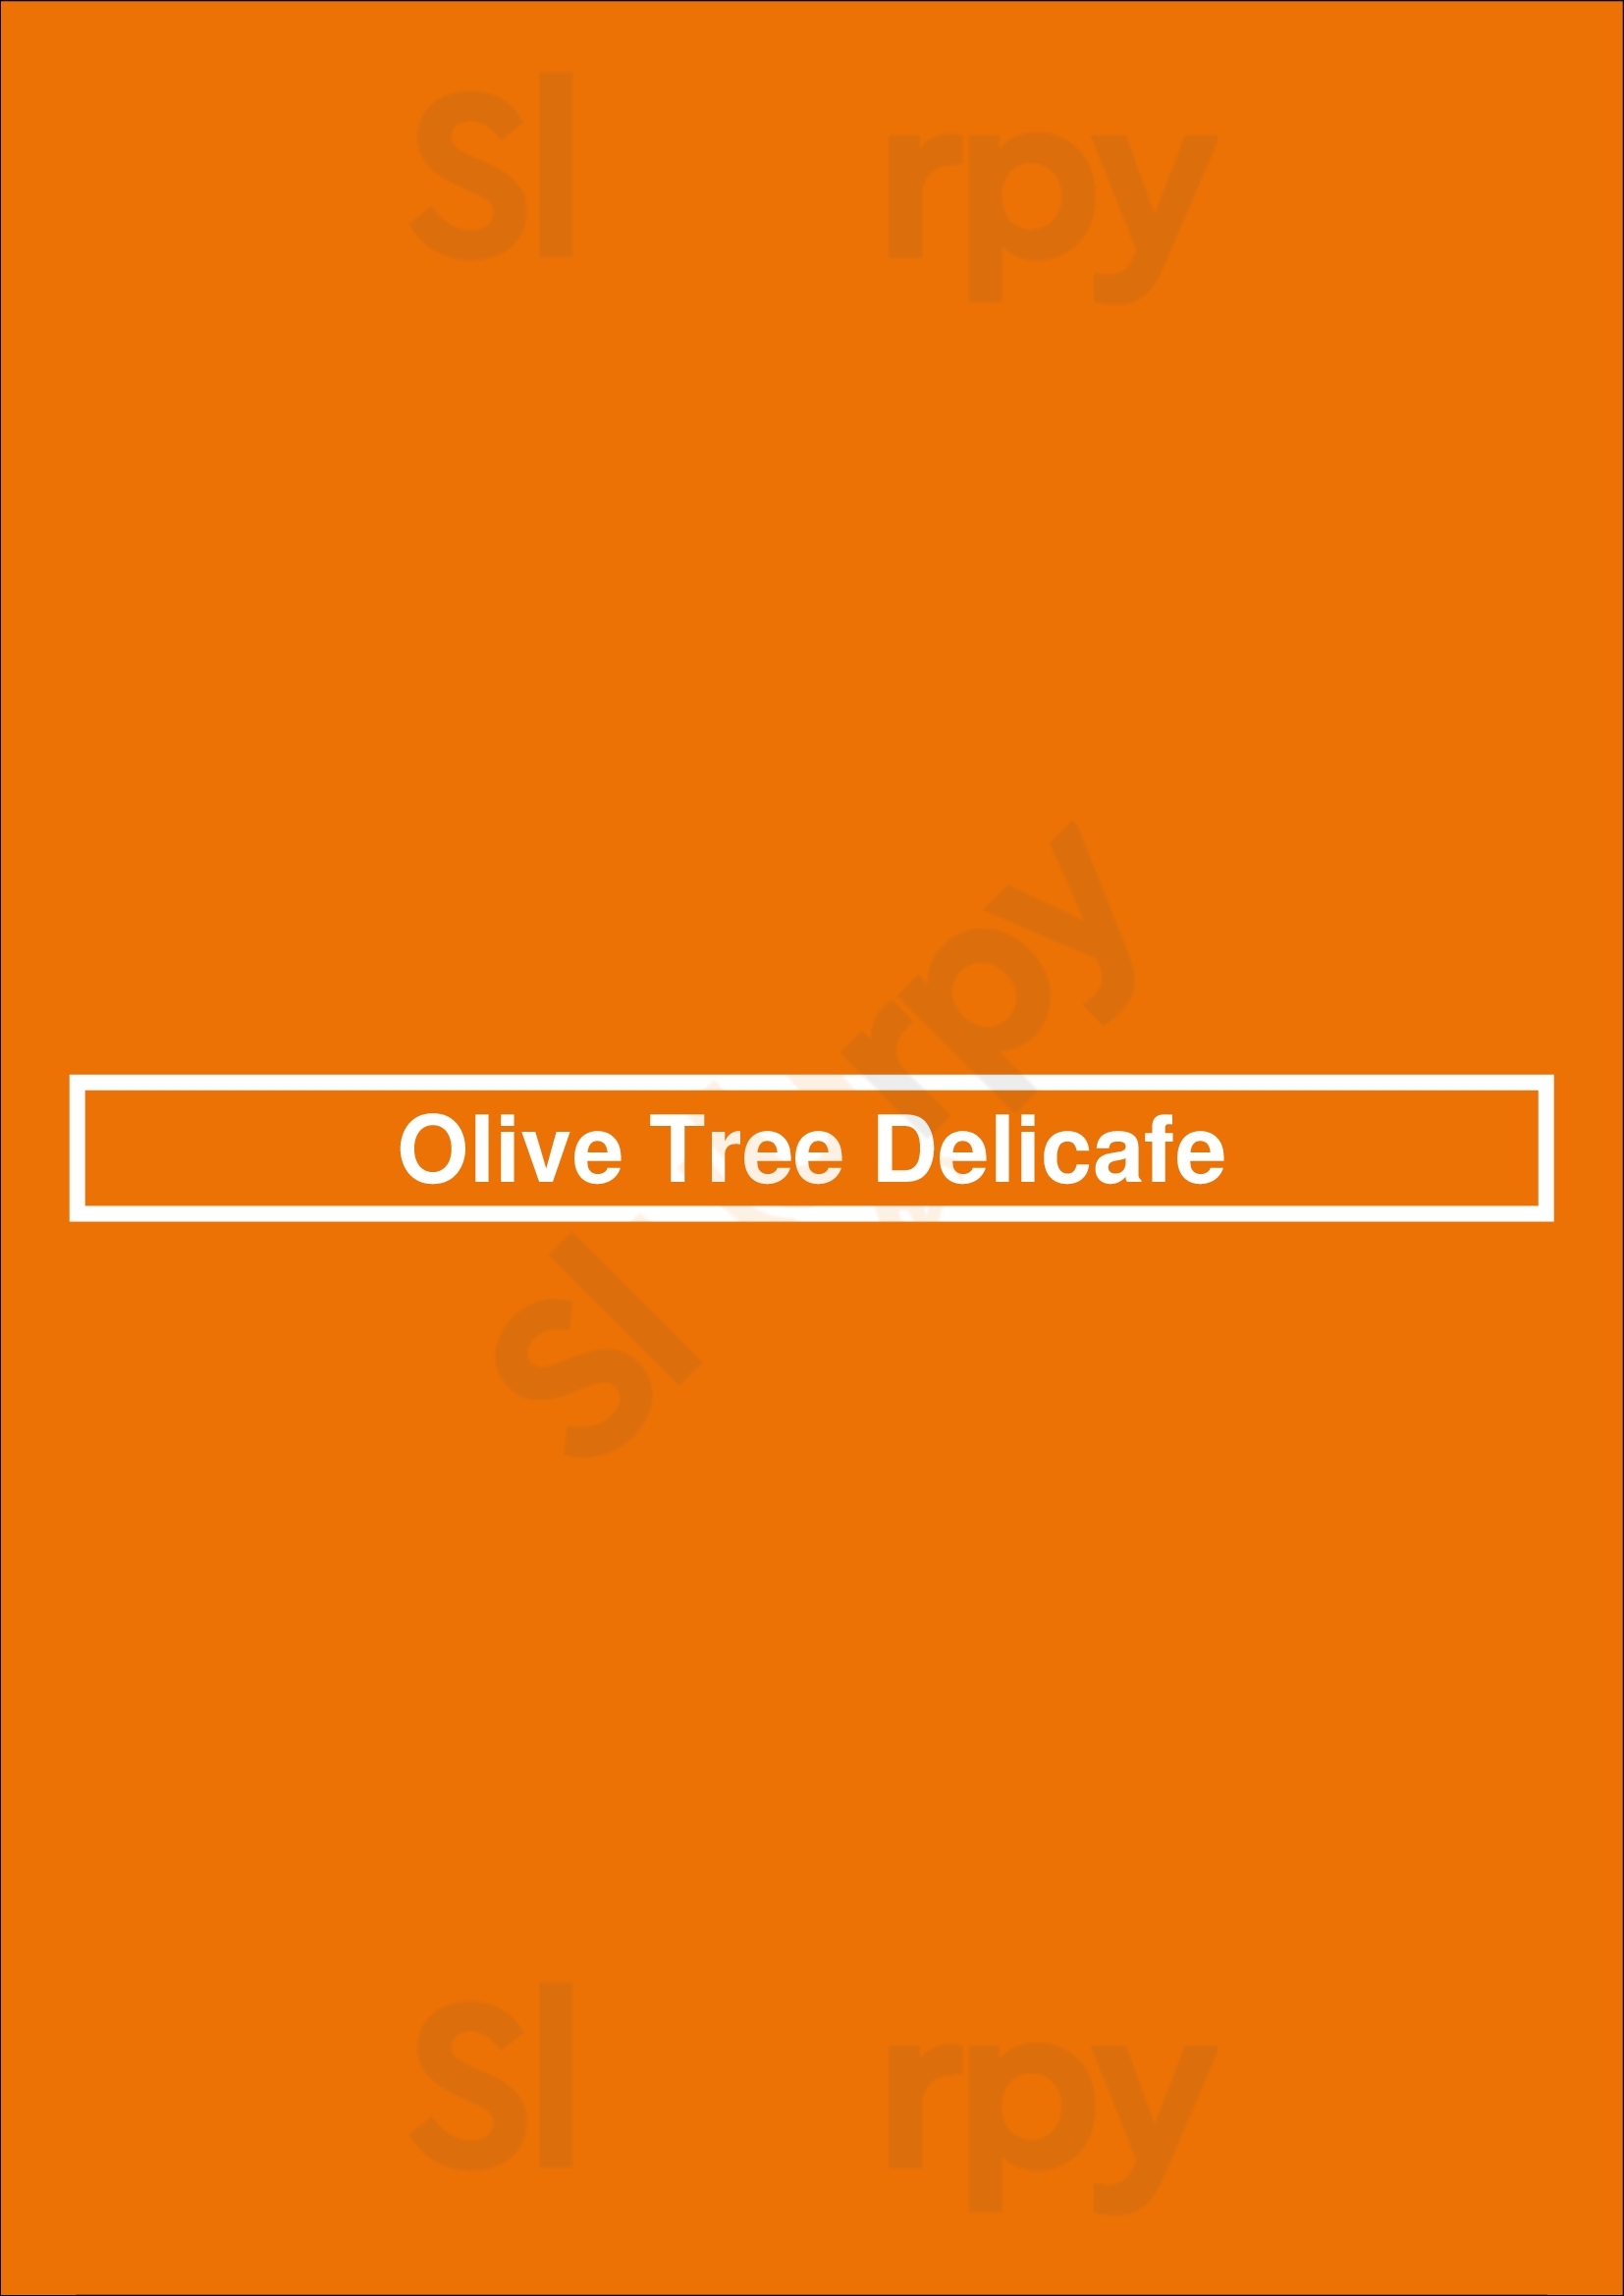 Olive Tree Delicafe Mississauga Menu - 1